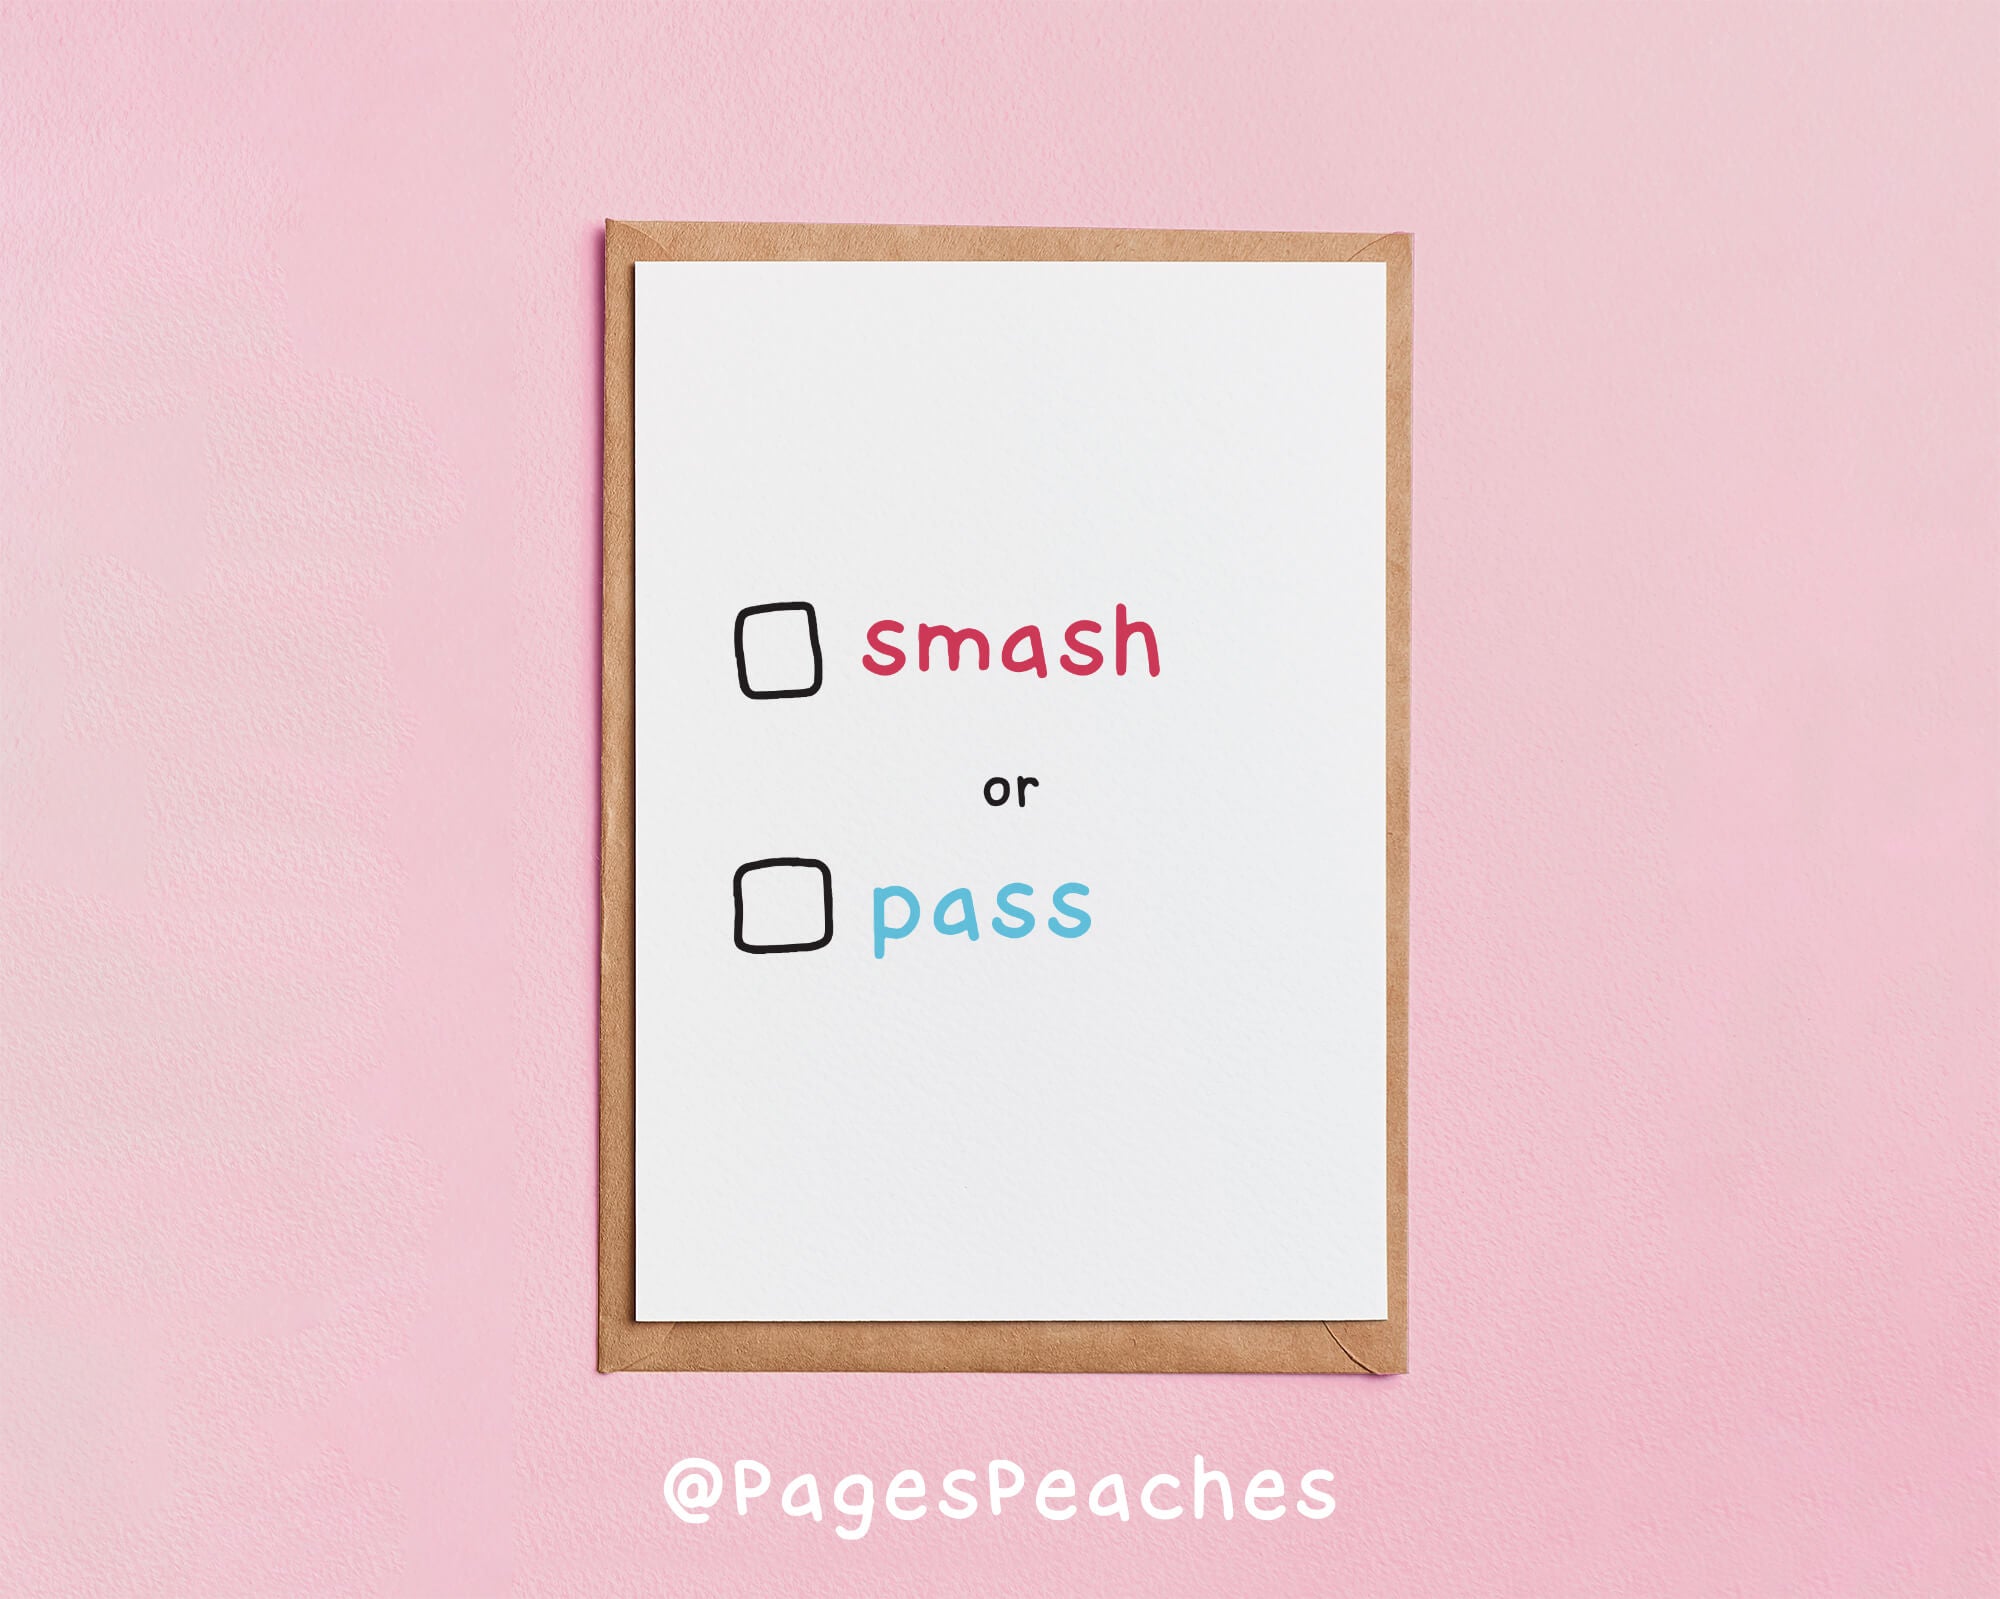 smash or pass?